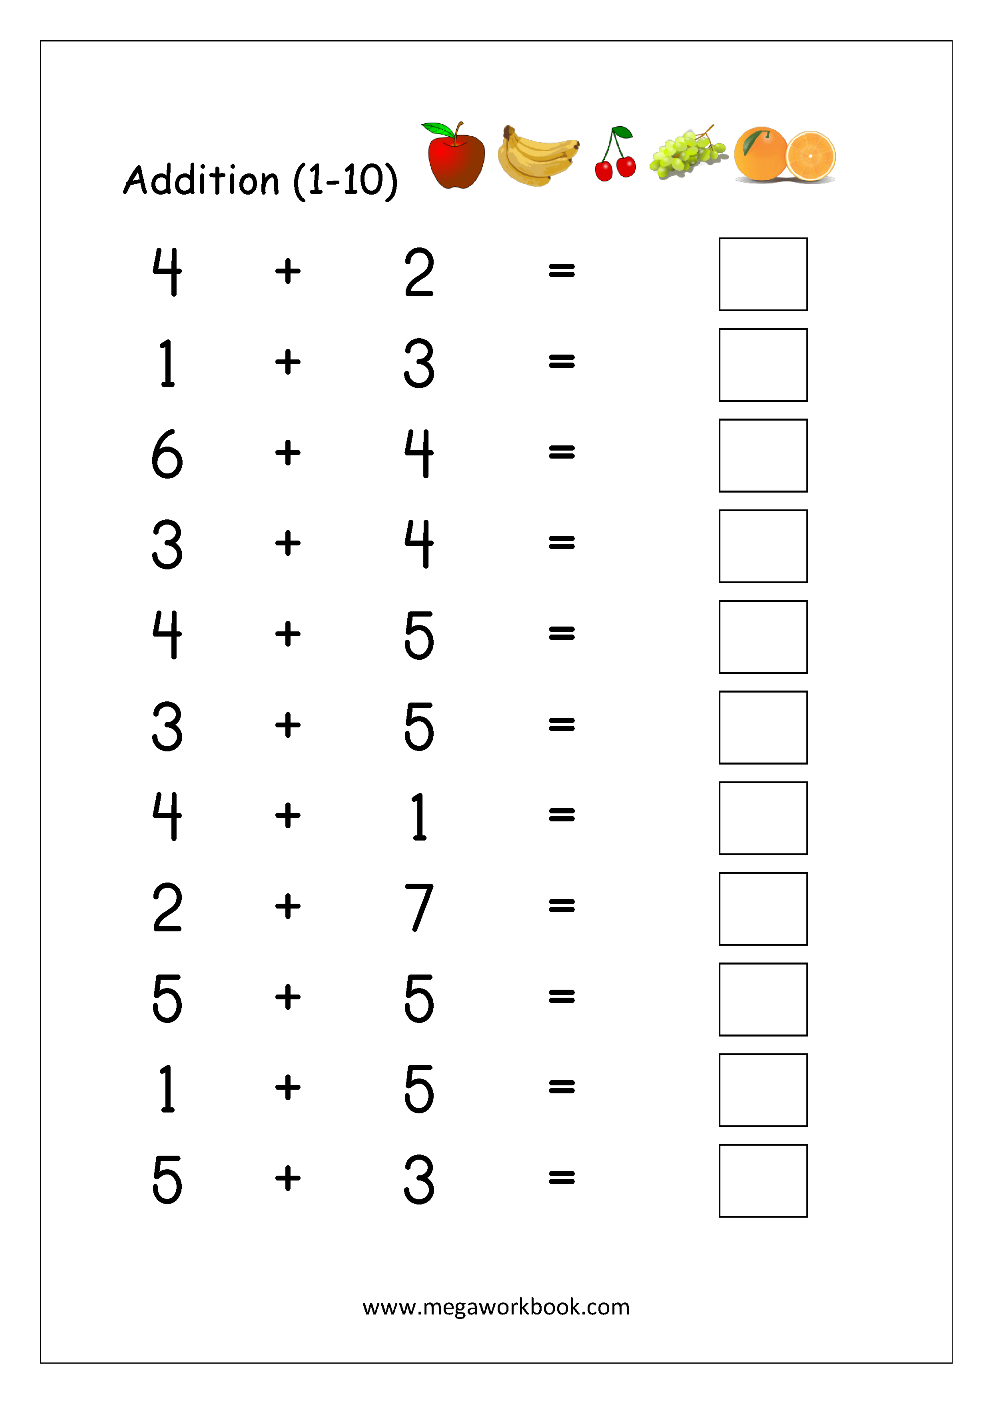 addition-color-by-number-worksheets-kindergarten-mom